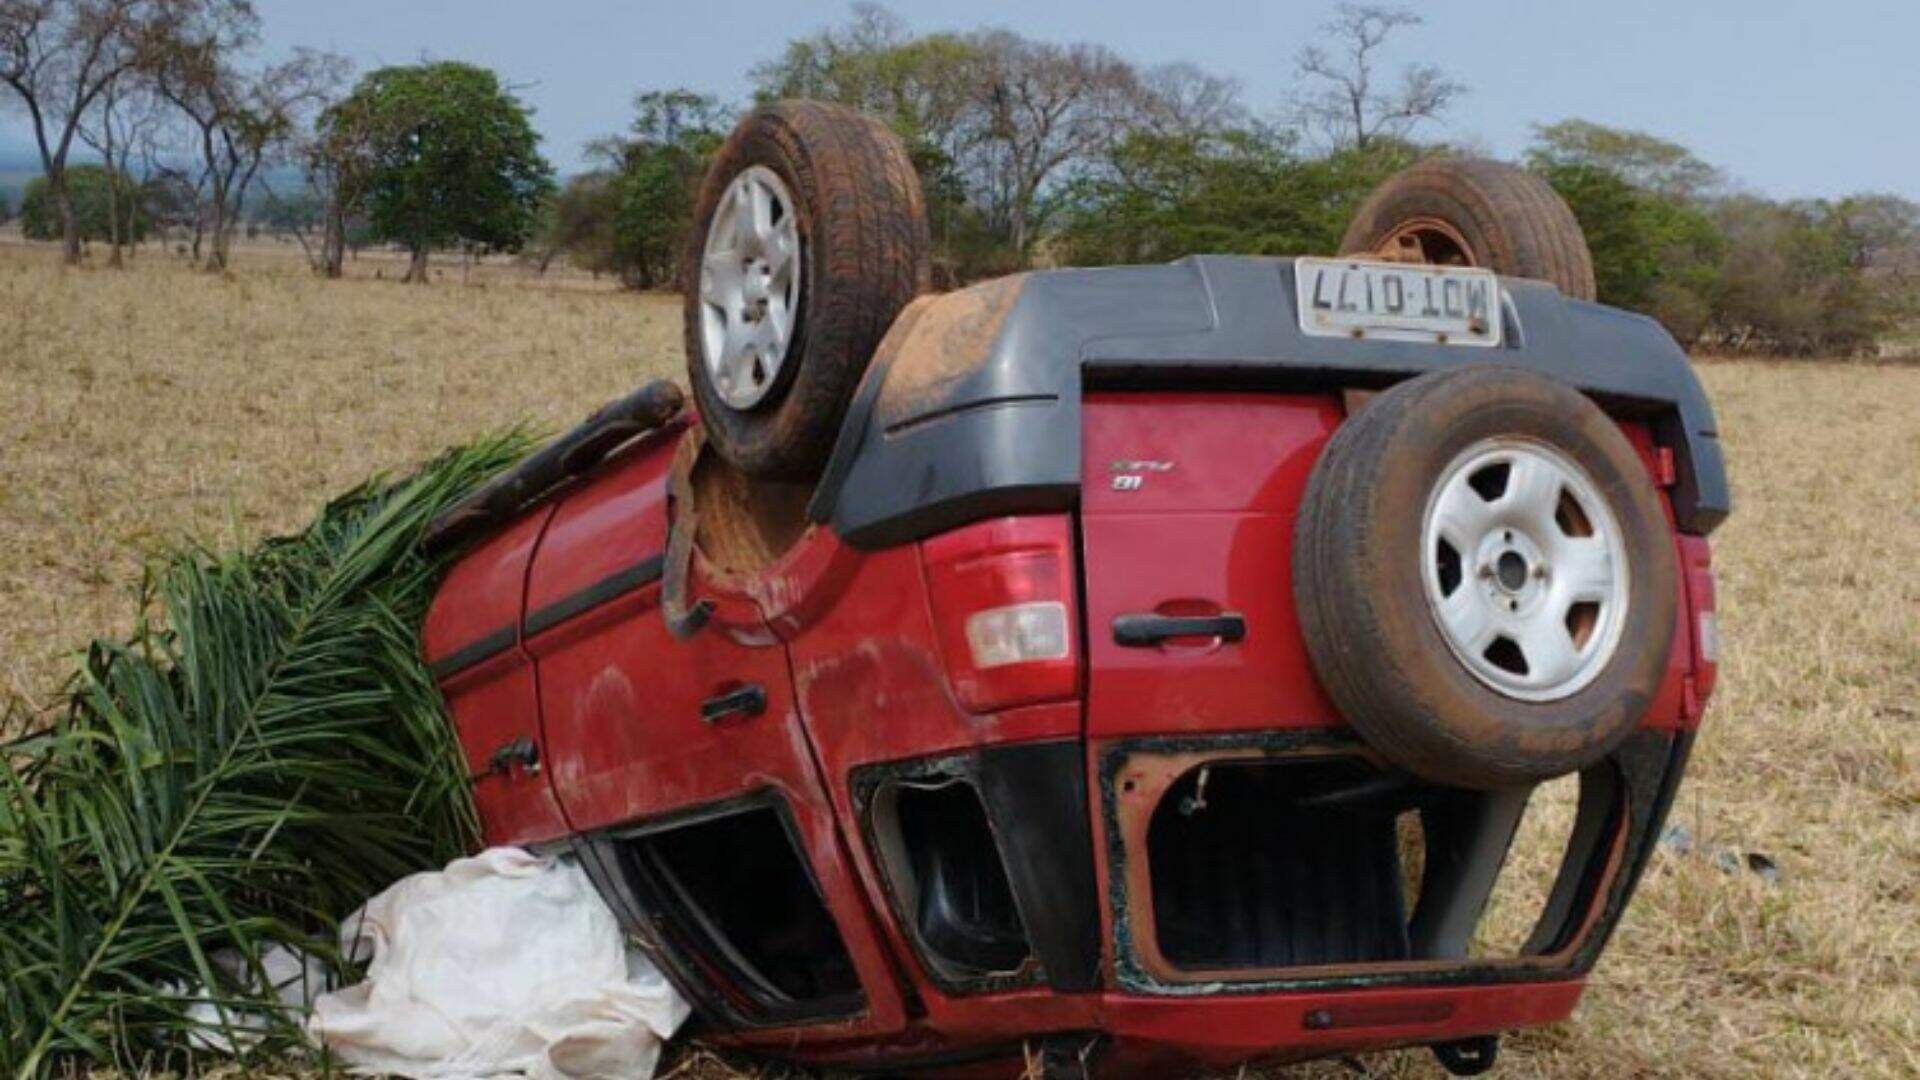 Sem cinto de segurança, carro capota e rapaz de 23 anos morre em Mato Grosso do Sul